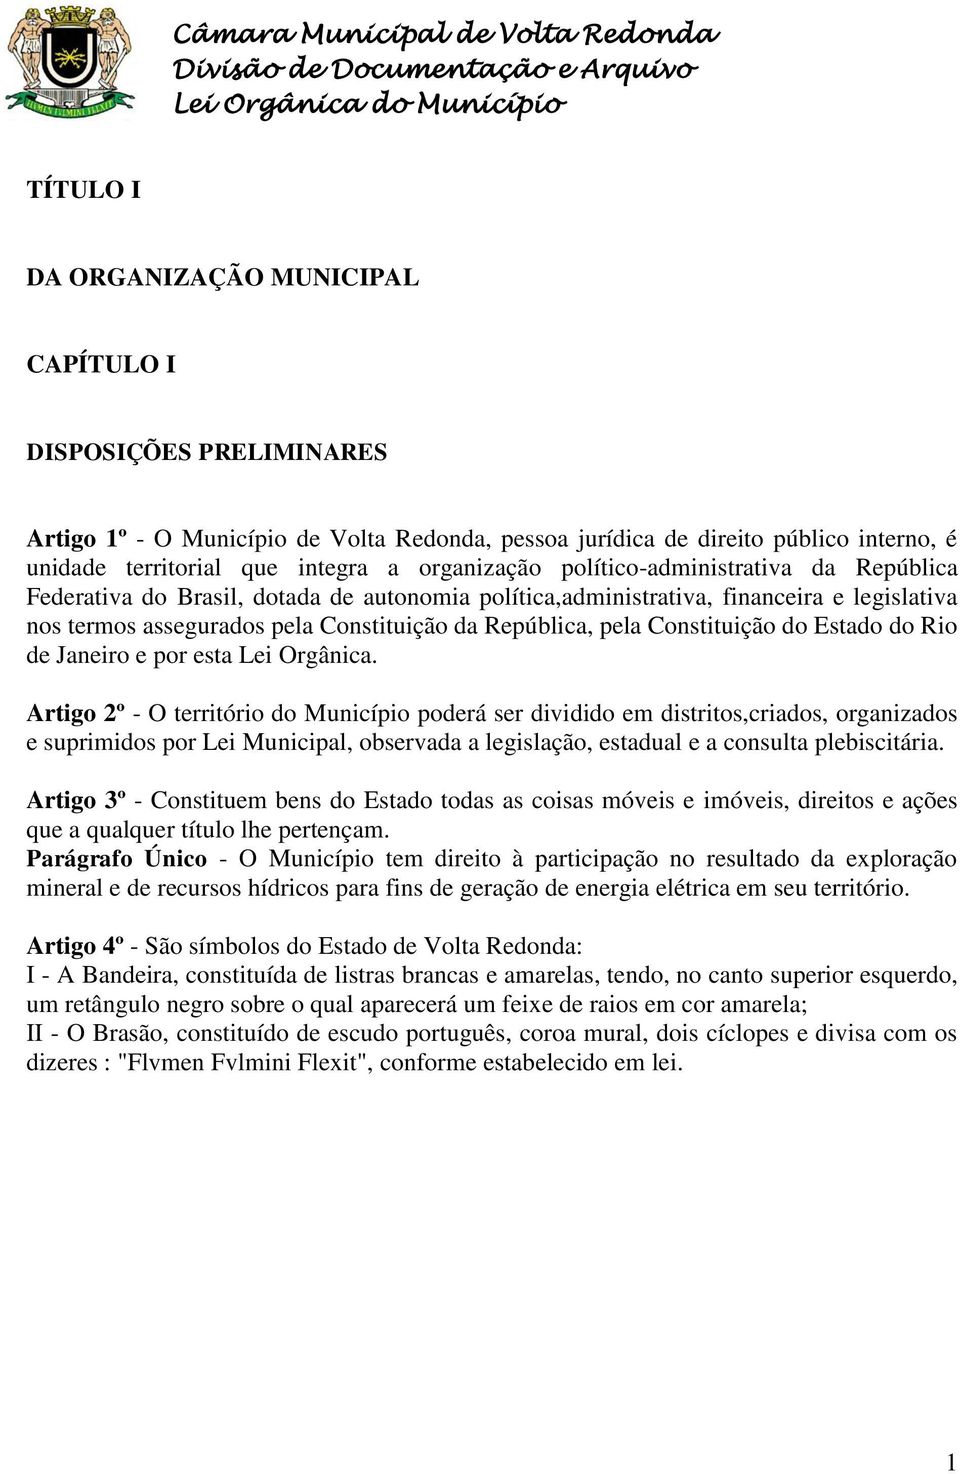 Constituição da República, pela Constituição do Estado do Rio de Janeiro e por esta Lei Orgânica.